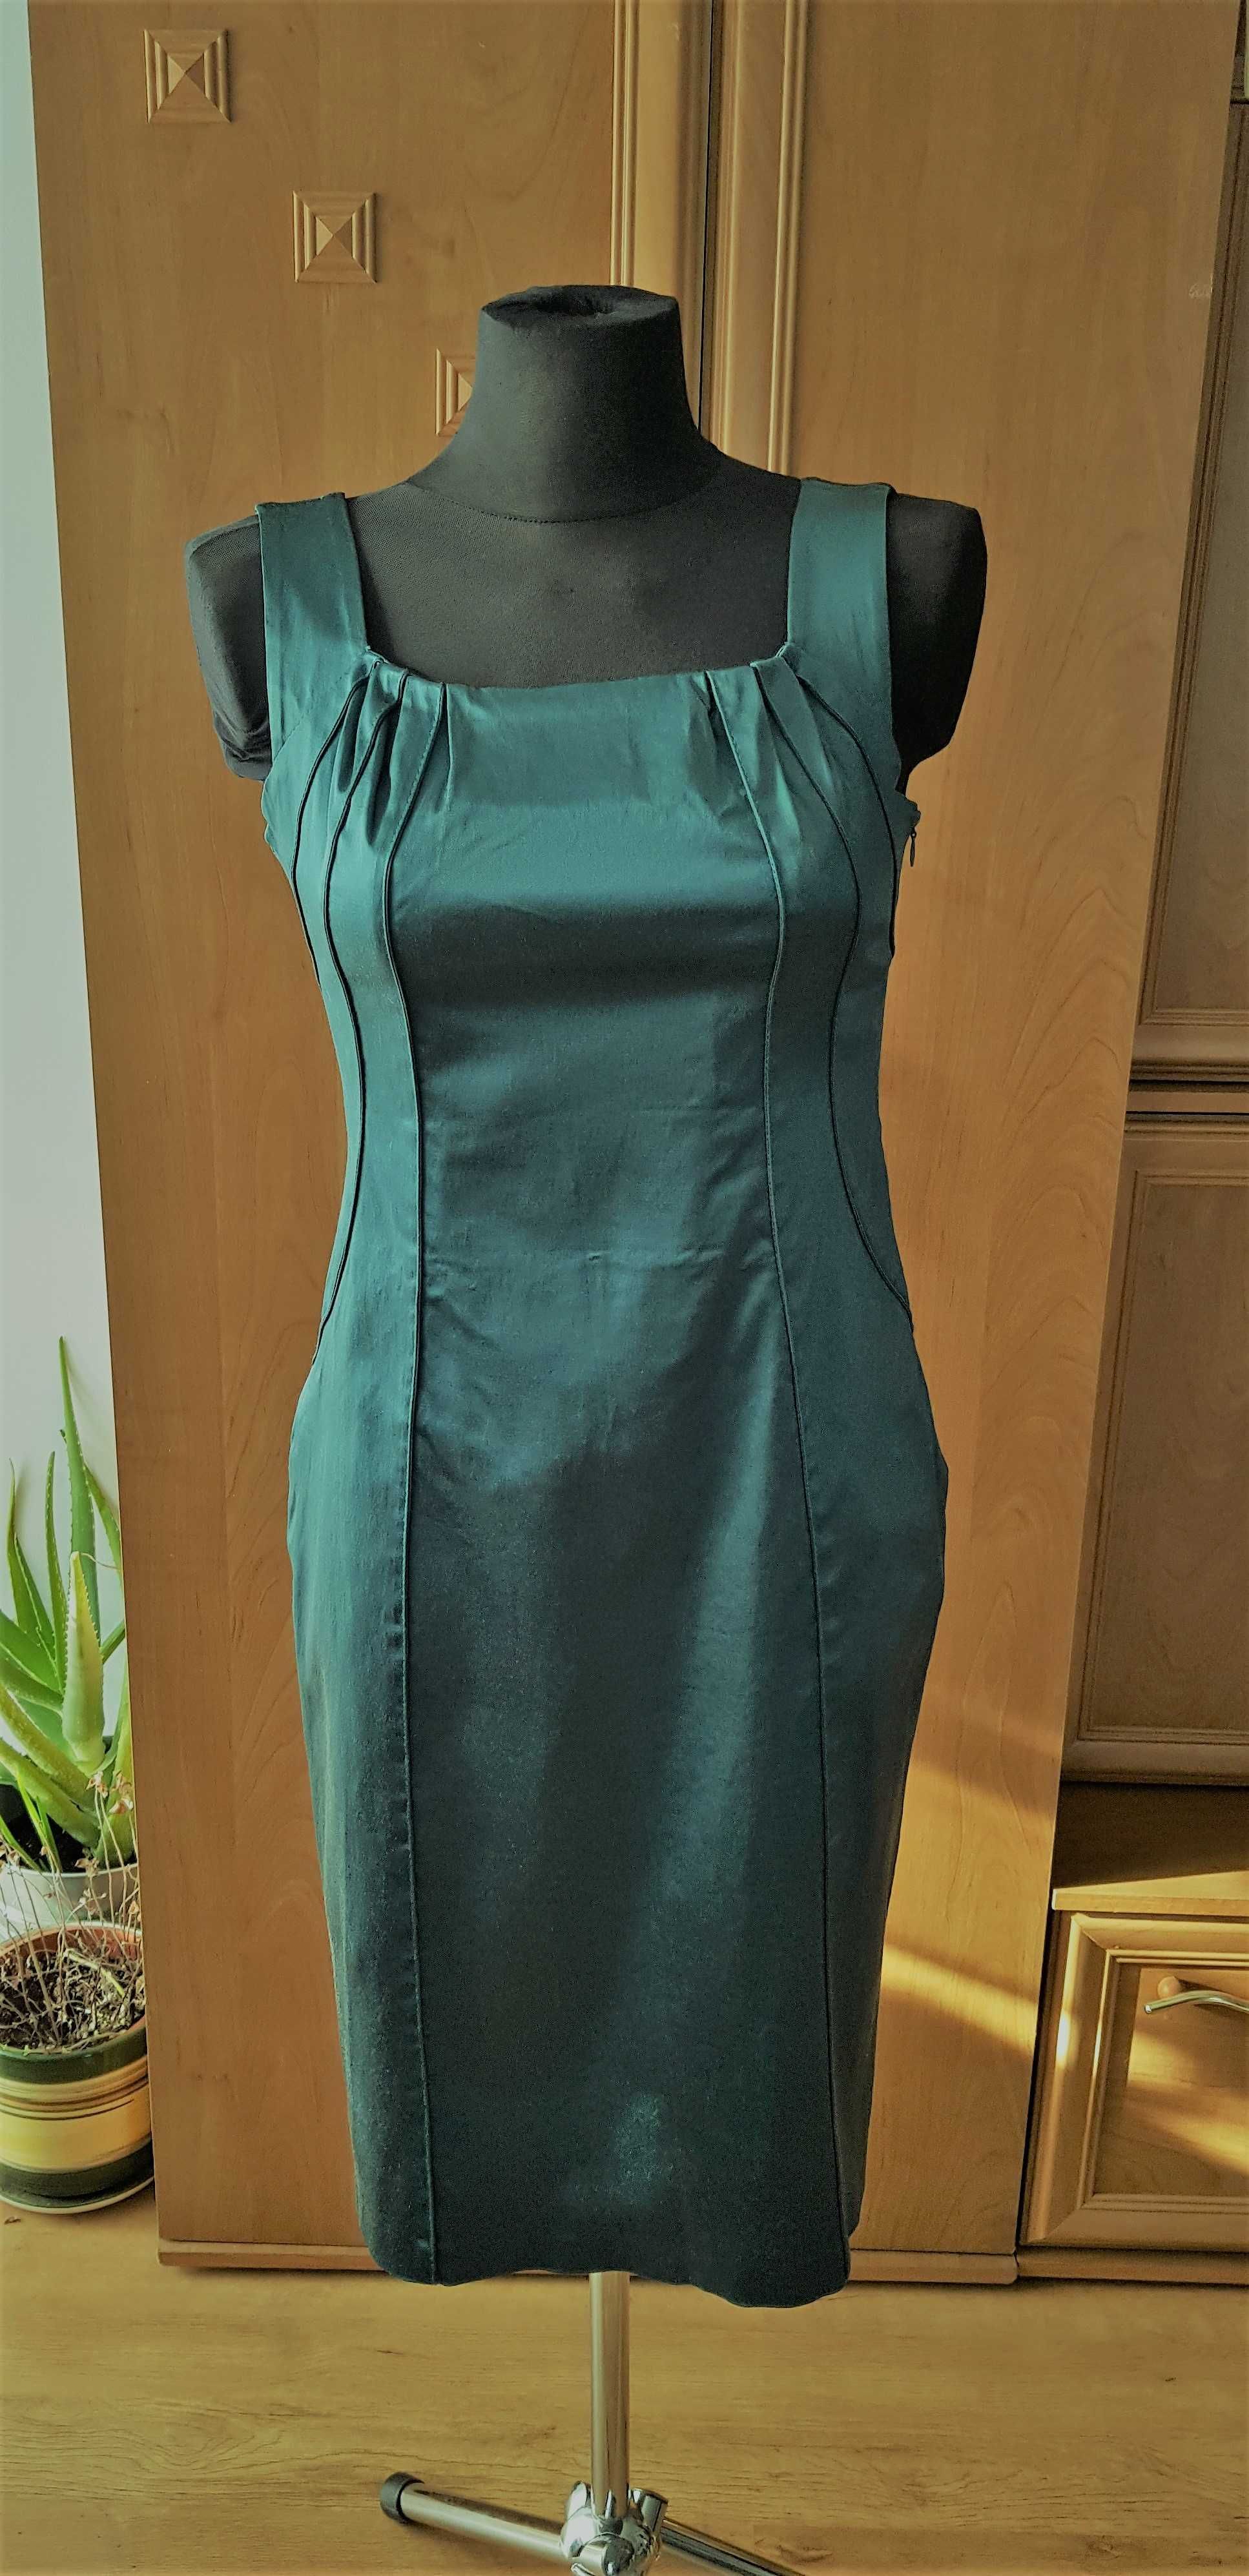 Sukienka wizytowa zieleń metaliczna + bolerko marki BOLERO rozm. 38-40